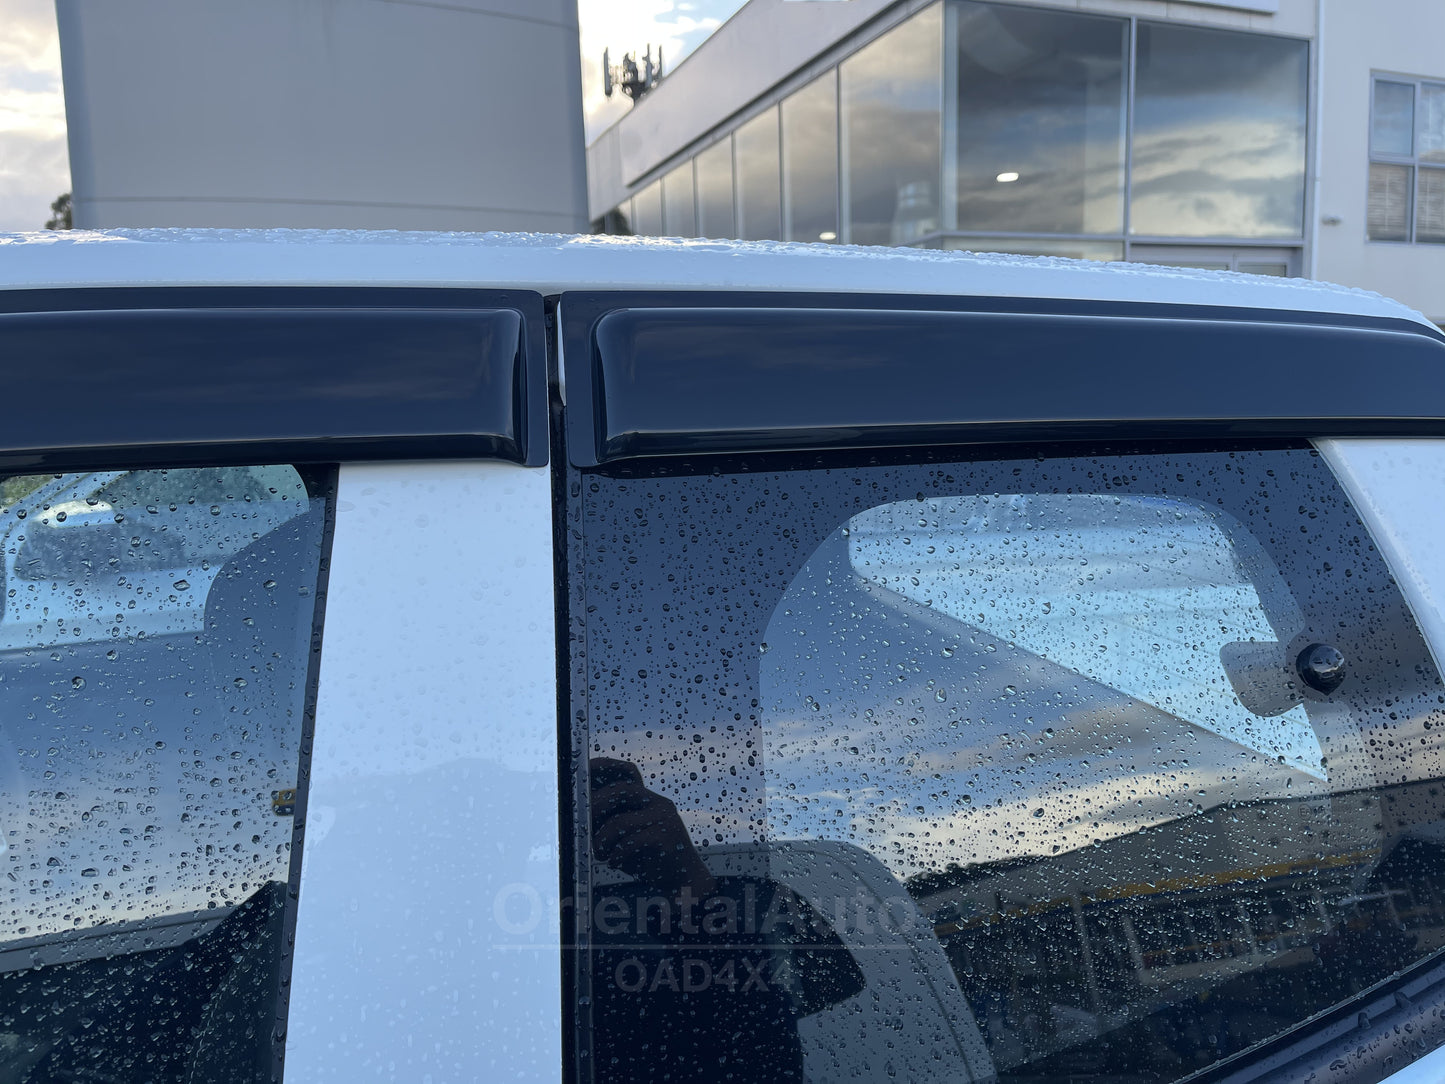 Luxury Weather Shields For Mazda BT-50 BT50 Extra Cab 2020-Onwards 4pcs Weathershields Window Visor Freestyle Cab